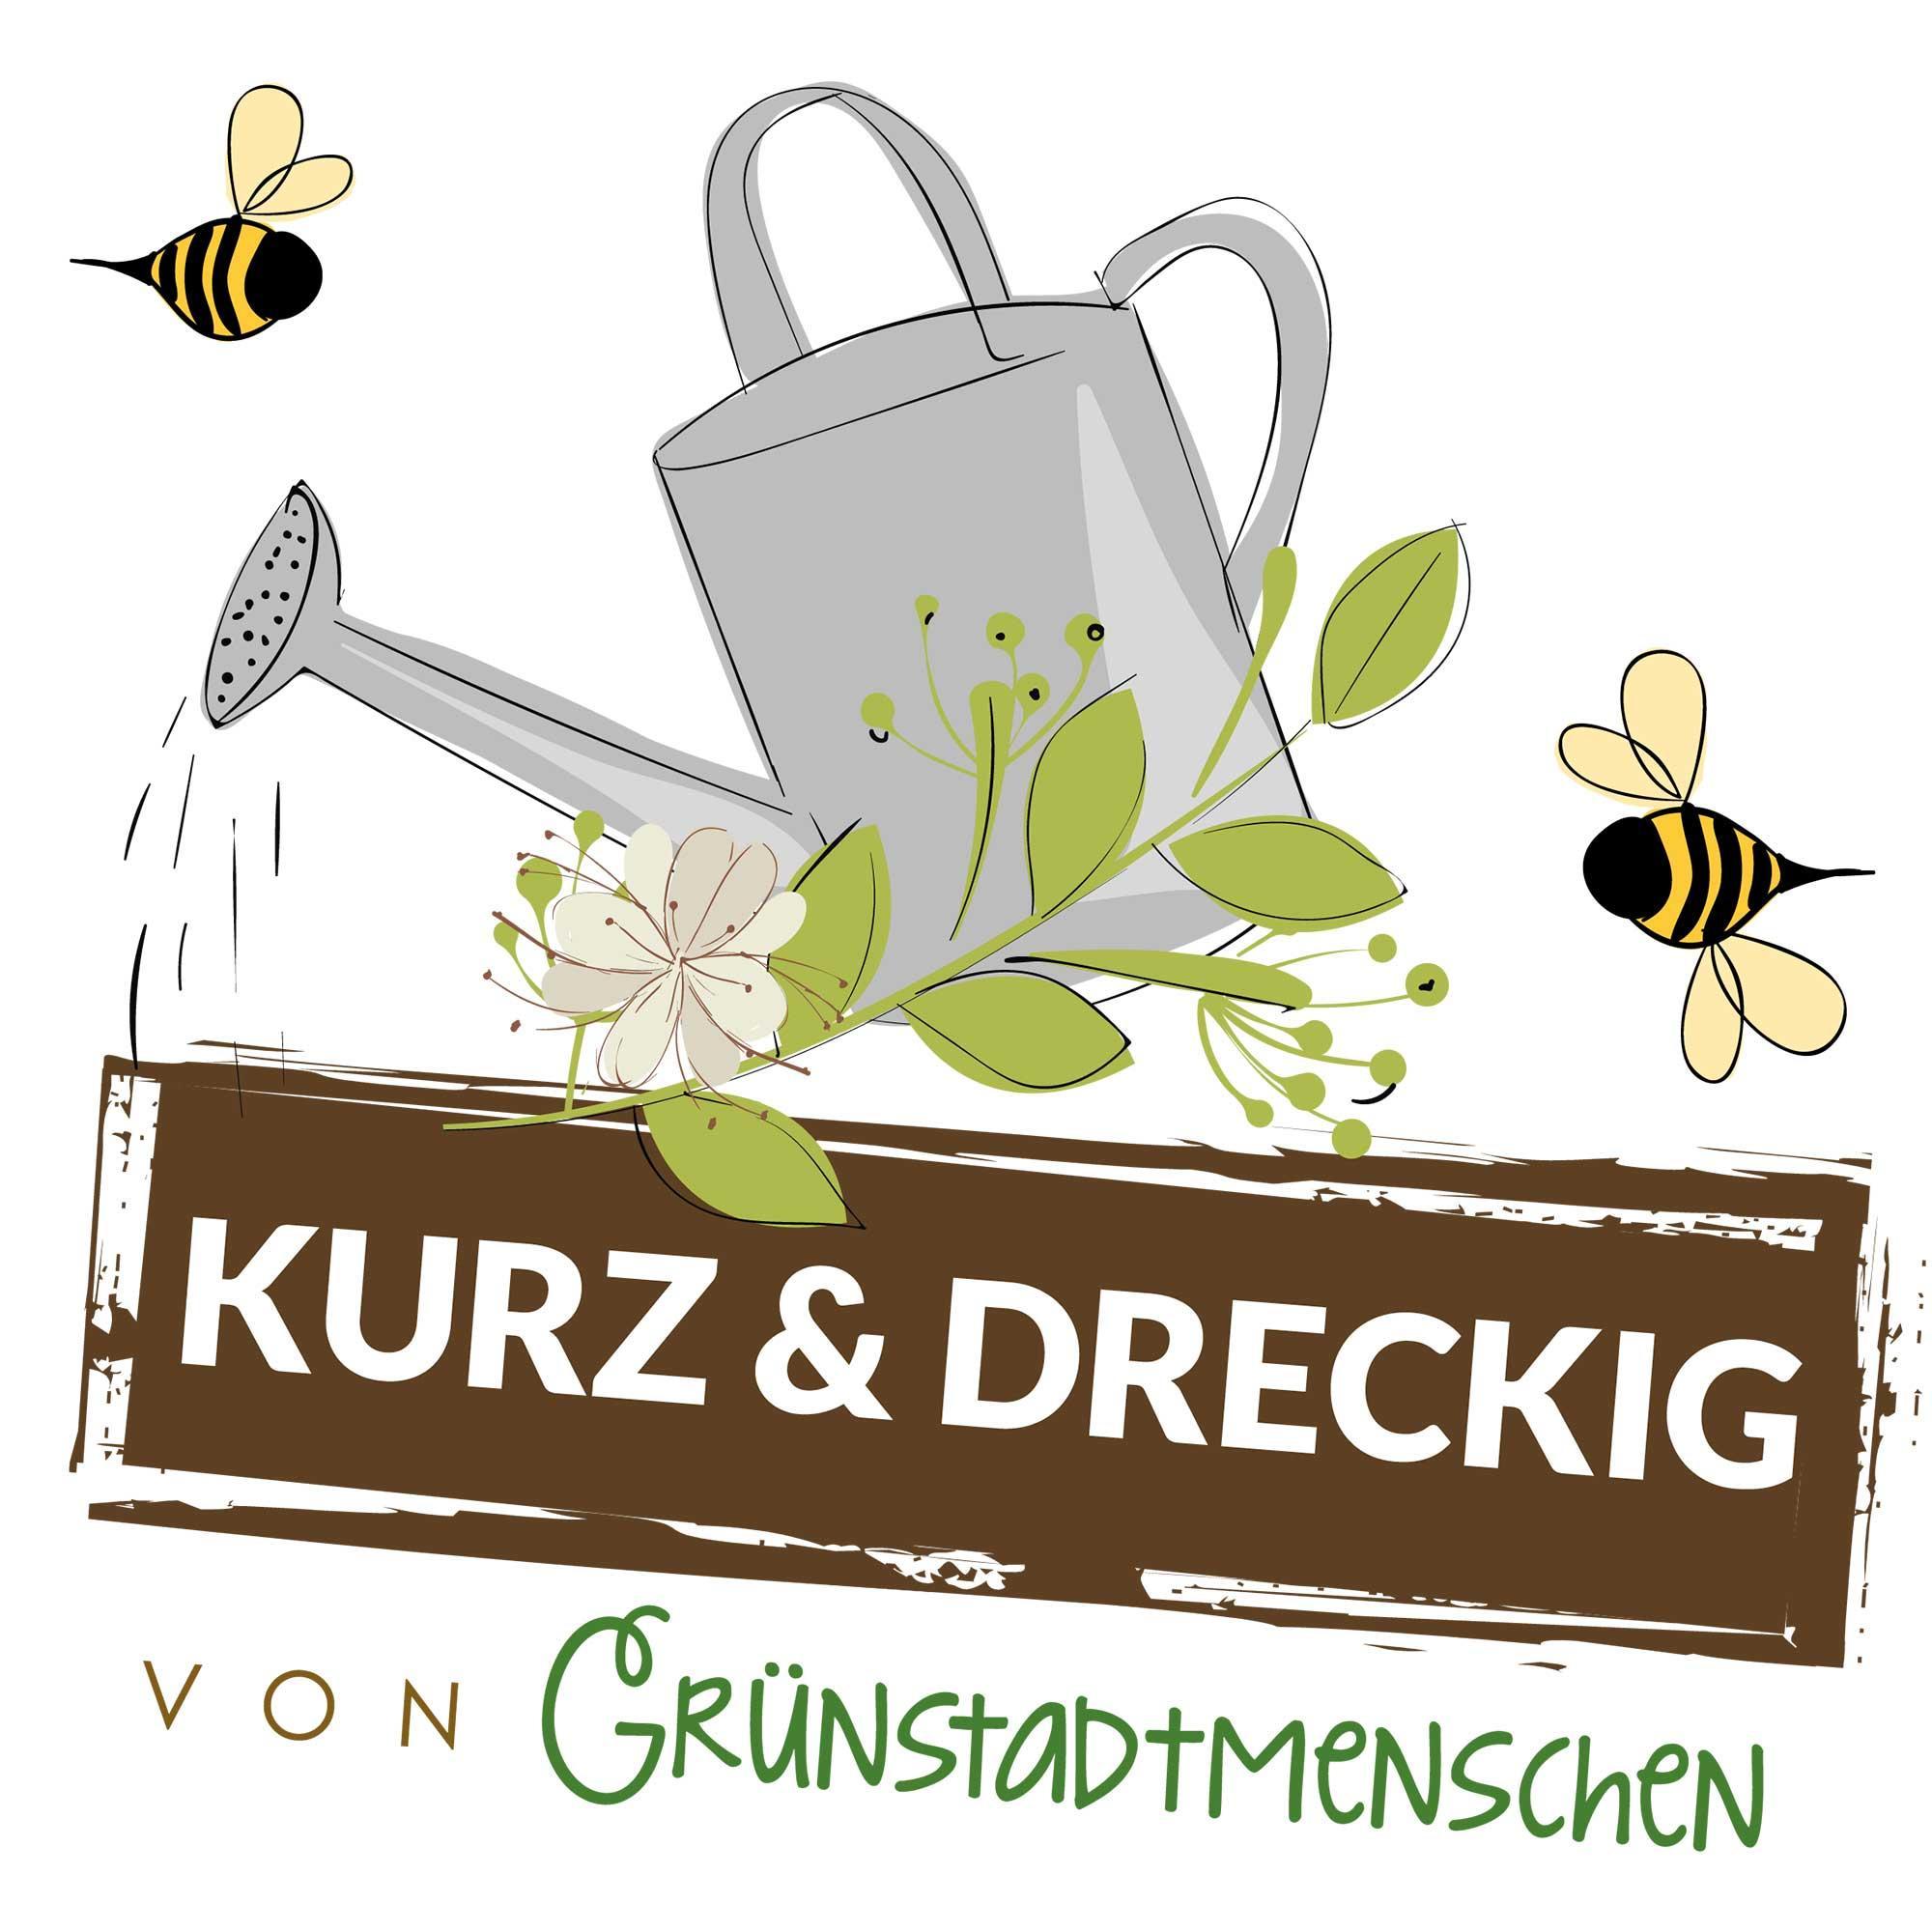 #55 Kurz & dreckig: Karinas Gartentipps für den April